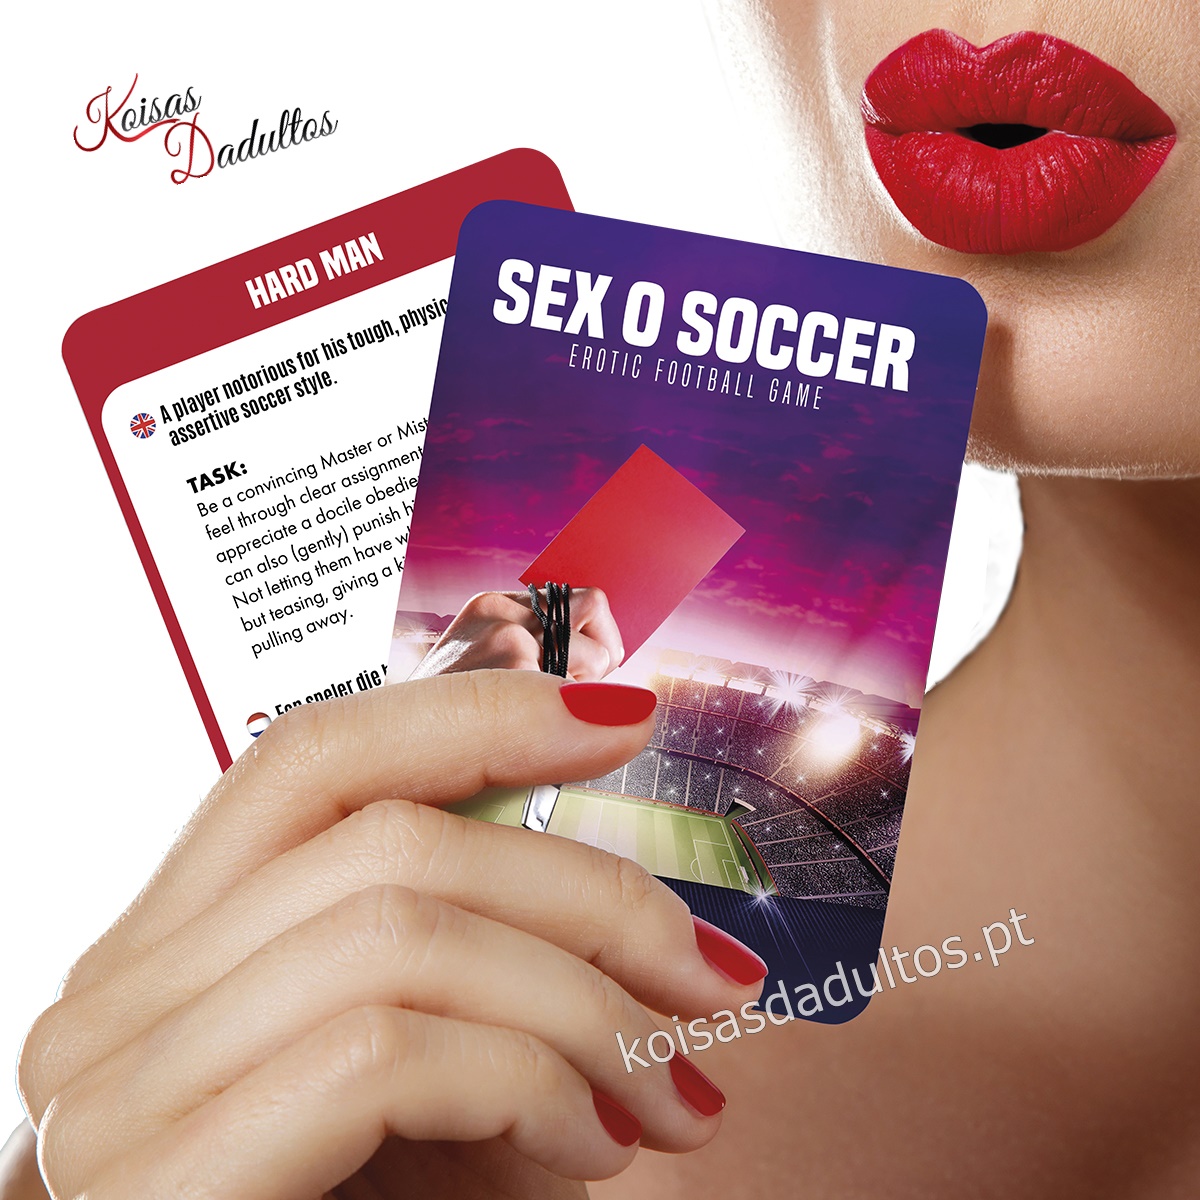 BRINCADEIRAS JOGOS Sex O Soccer - Jogo de Futebol Erótico Sex O Soccer - Jogo de Futebol Erótico